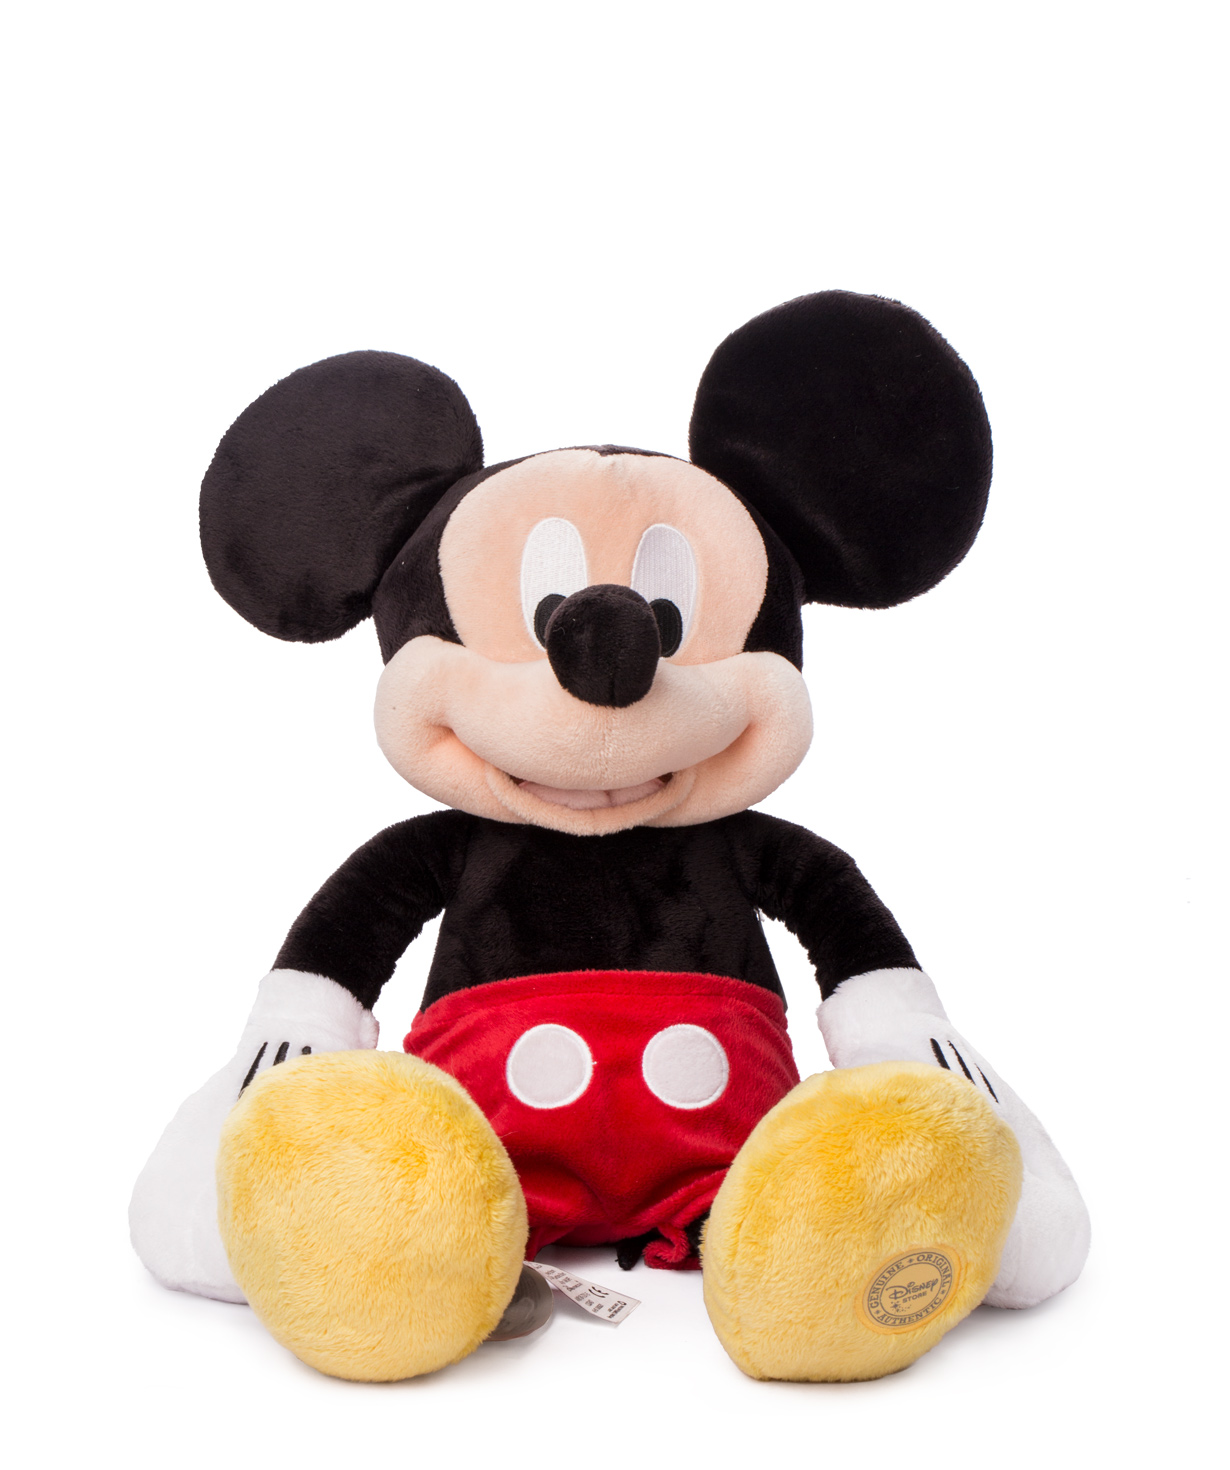 Խաղալիք Միկկի Մաուս փափուկ, Disney